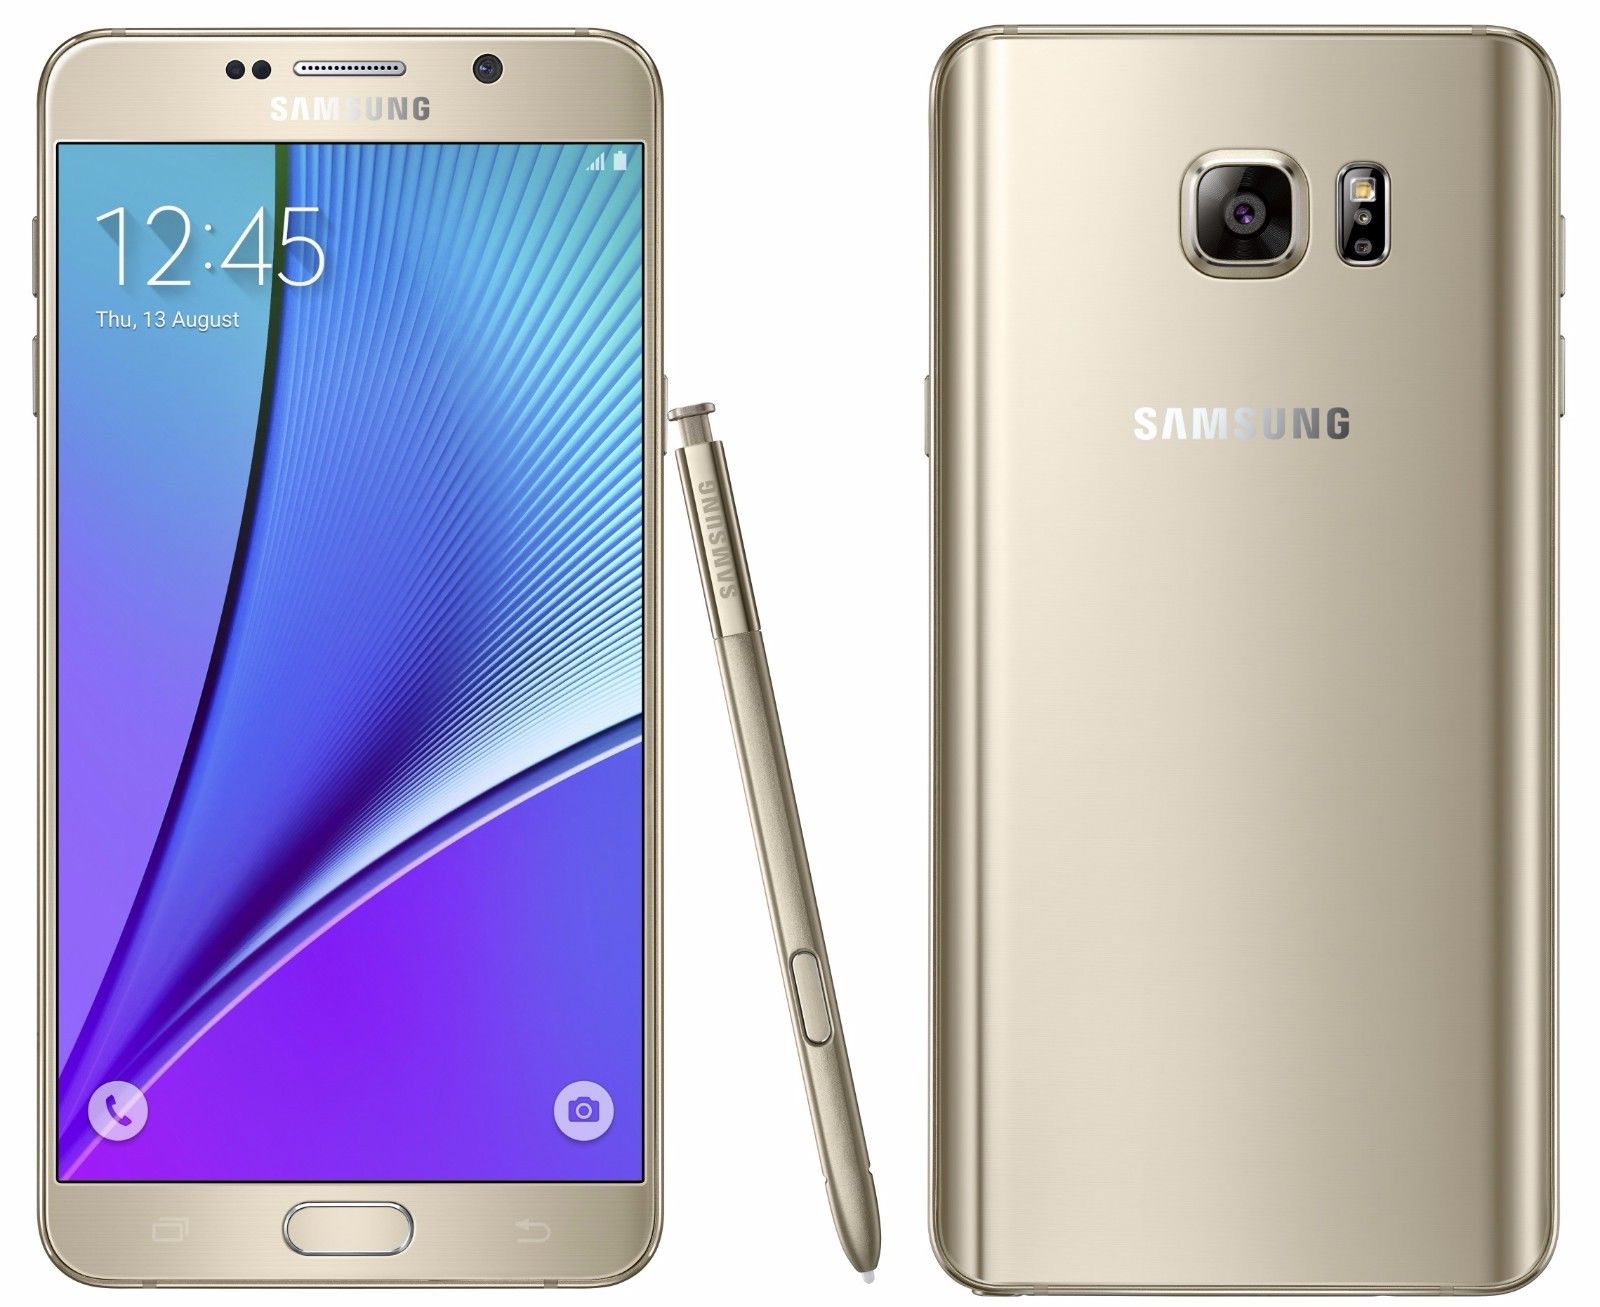 Samsung Galaxy Note 5 32 GB (Distribütör Garantili)